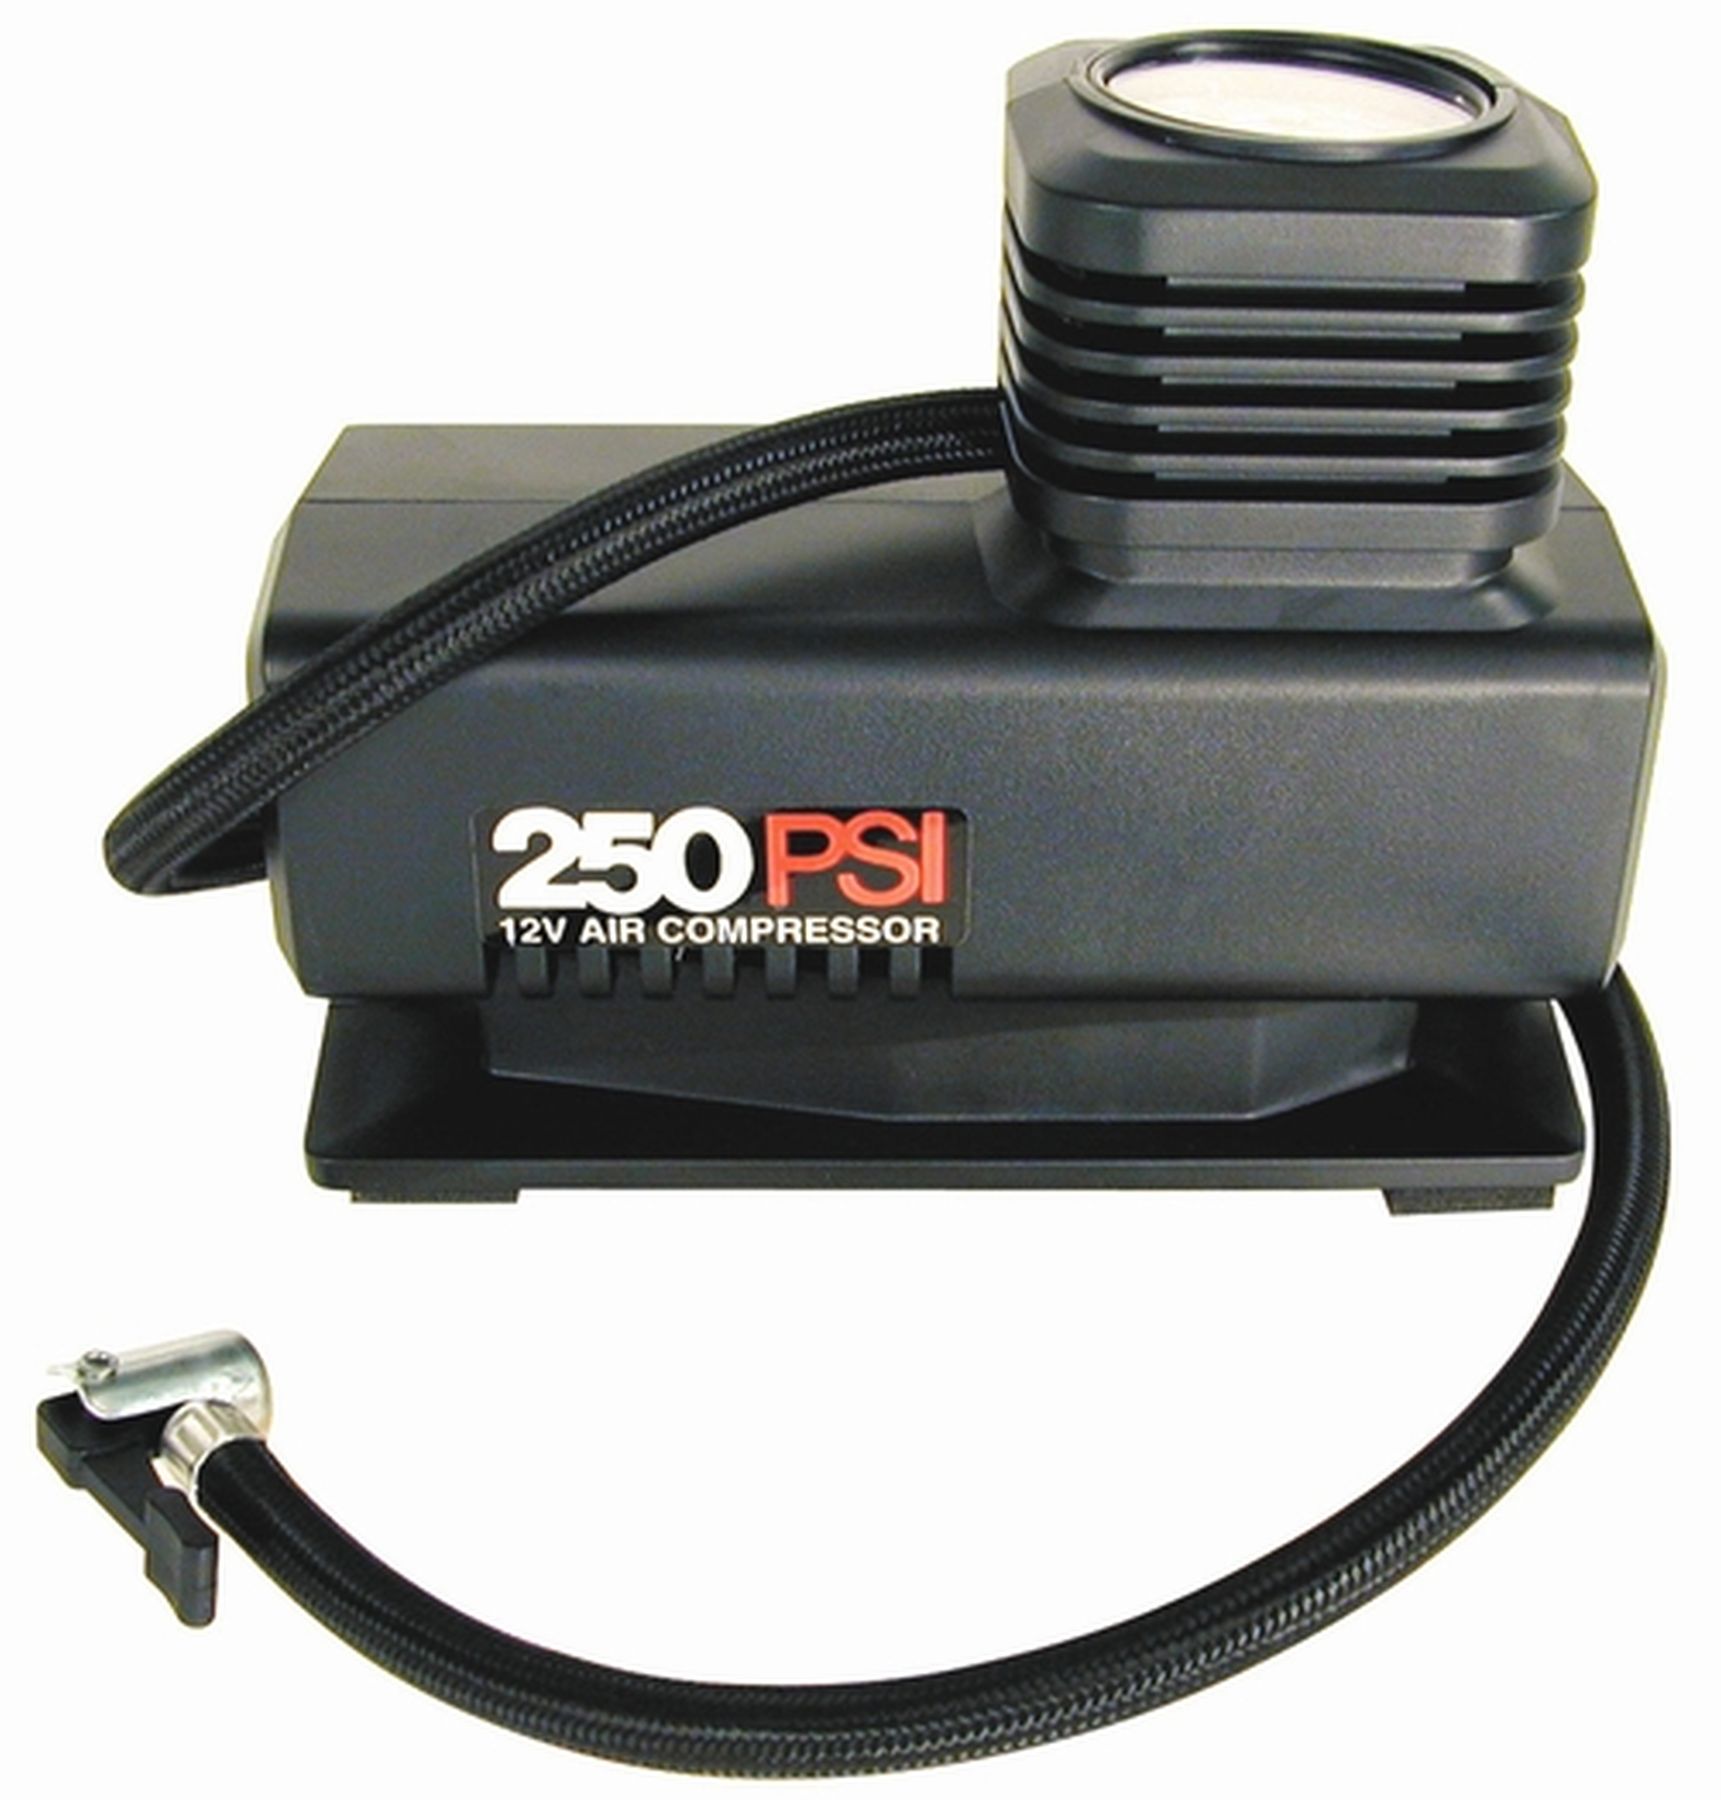 Custom Accessories Auto 250-psi Compressor with 10 foot Cord